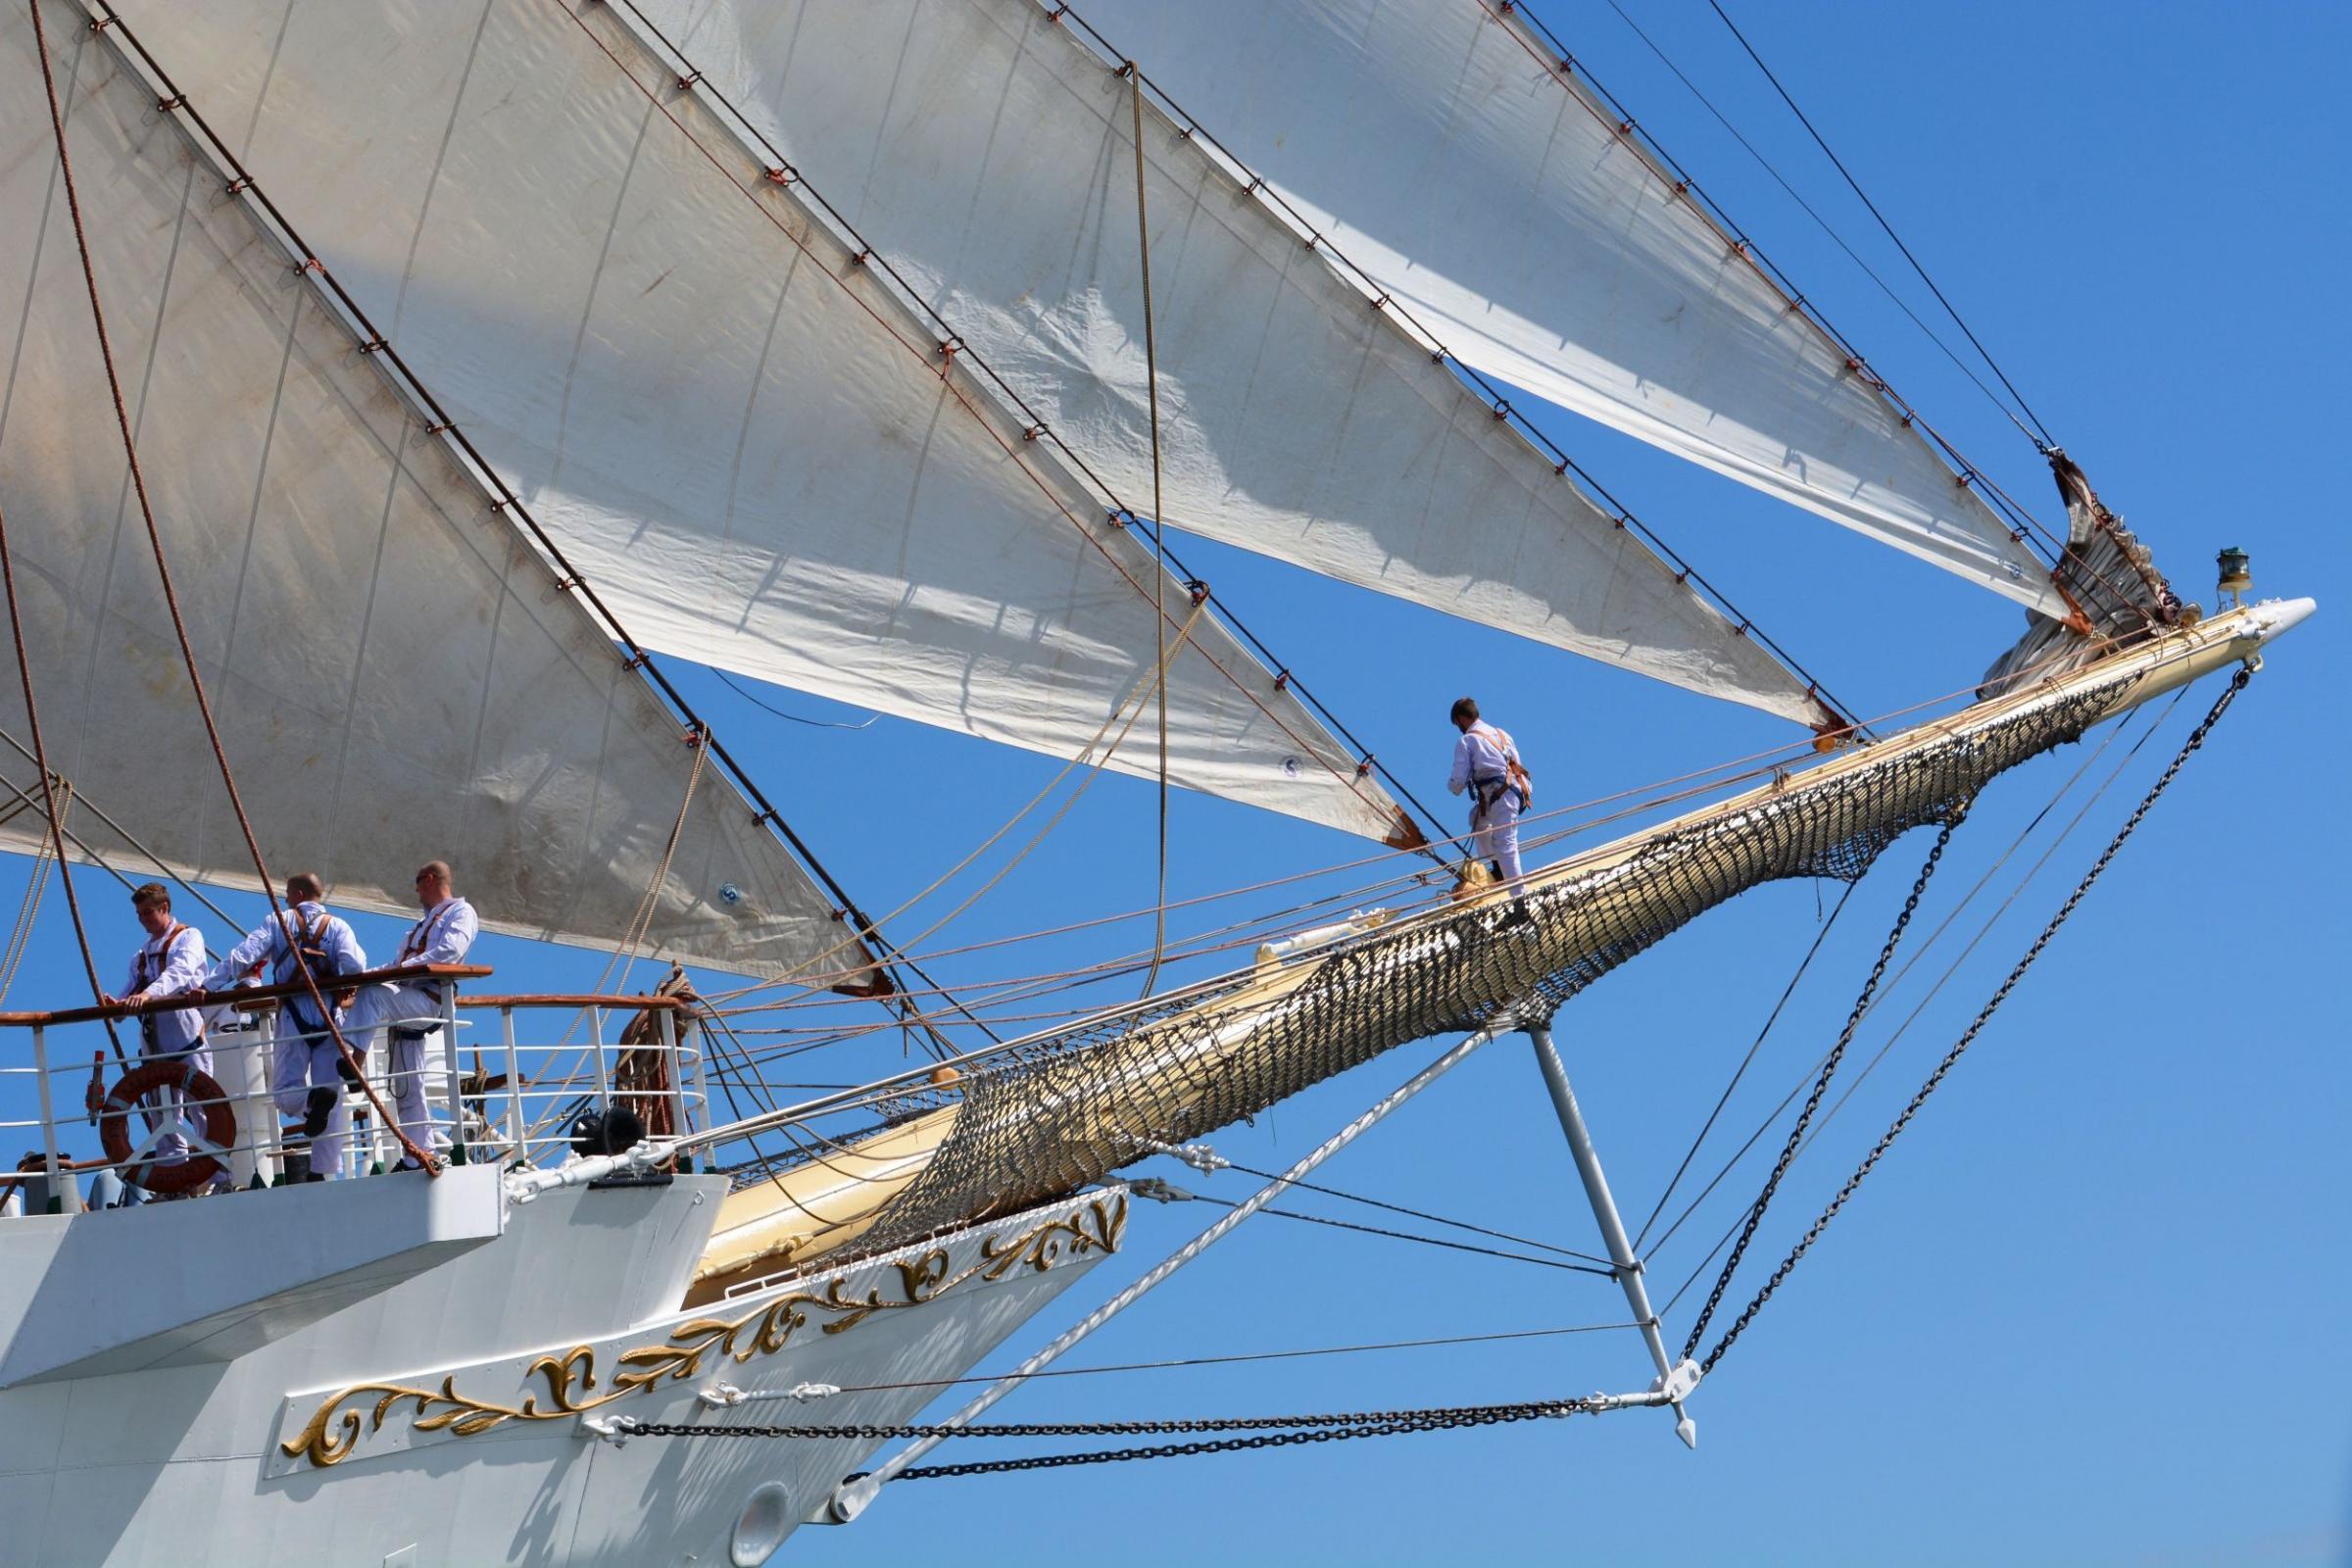 Unfurling the sails on Dar Mlodziezy tall ship